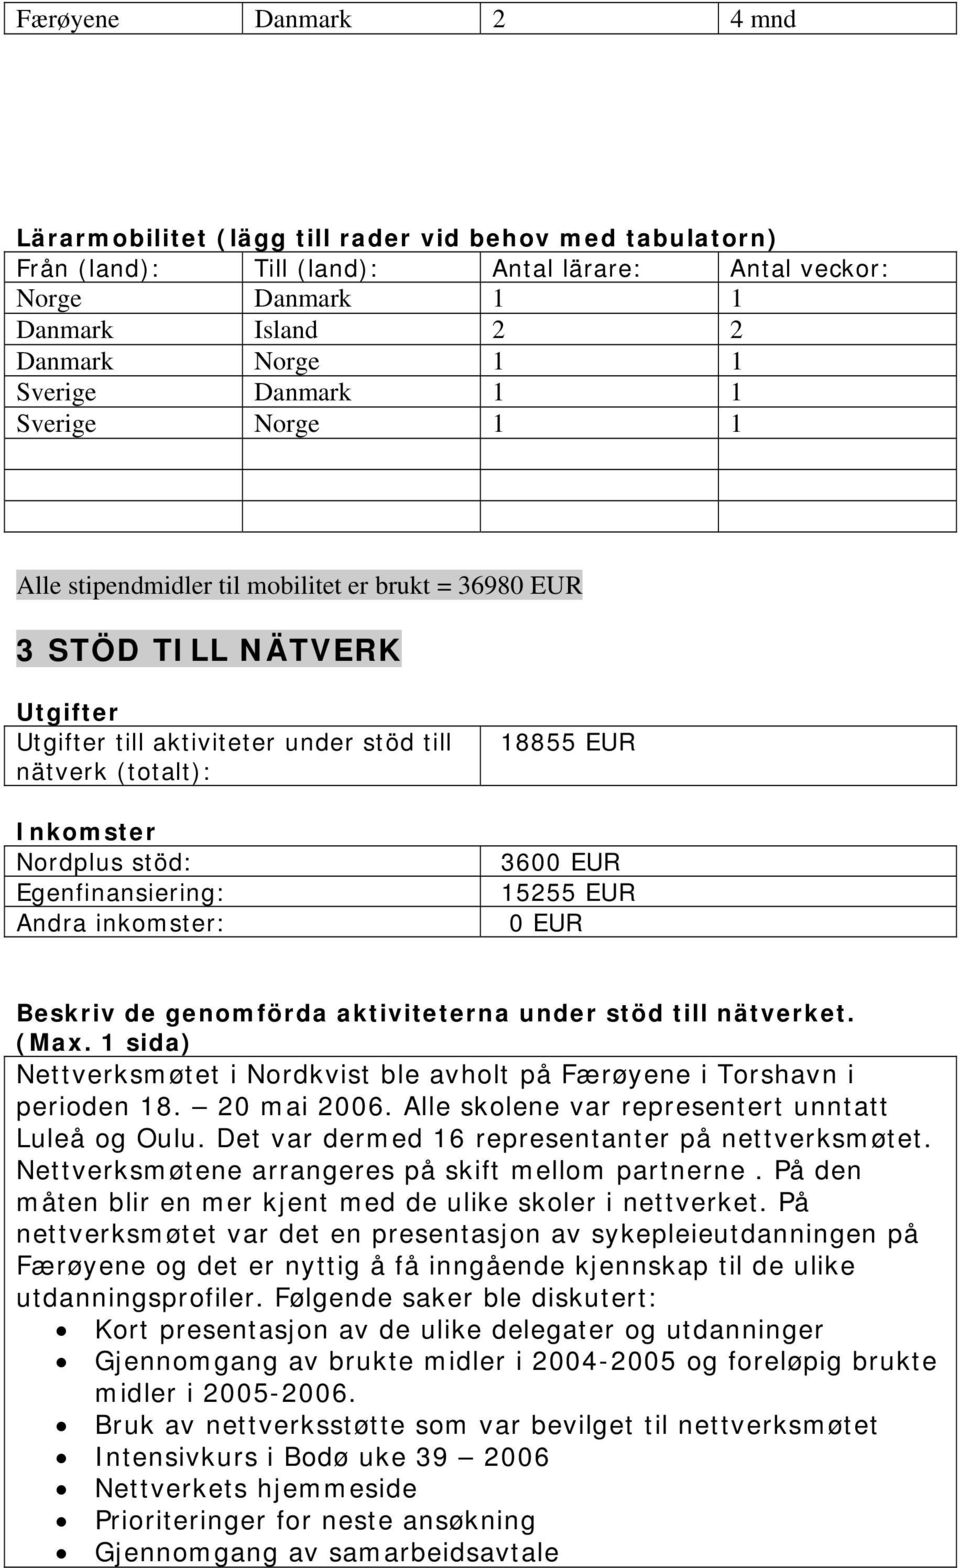 15255 0 Beskriv de genomförda aktiviteterna under stöd till nätverket. Nettverksmøtet i Nordkvist ble avholt på Færøyene i Torshavn i perioden 18. 20 mai 2006.